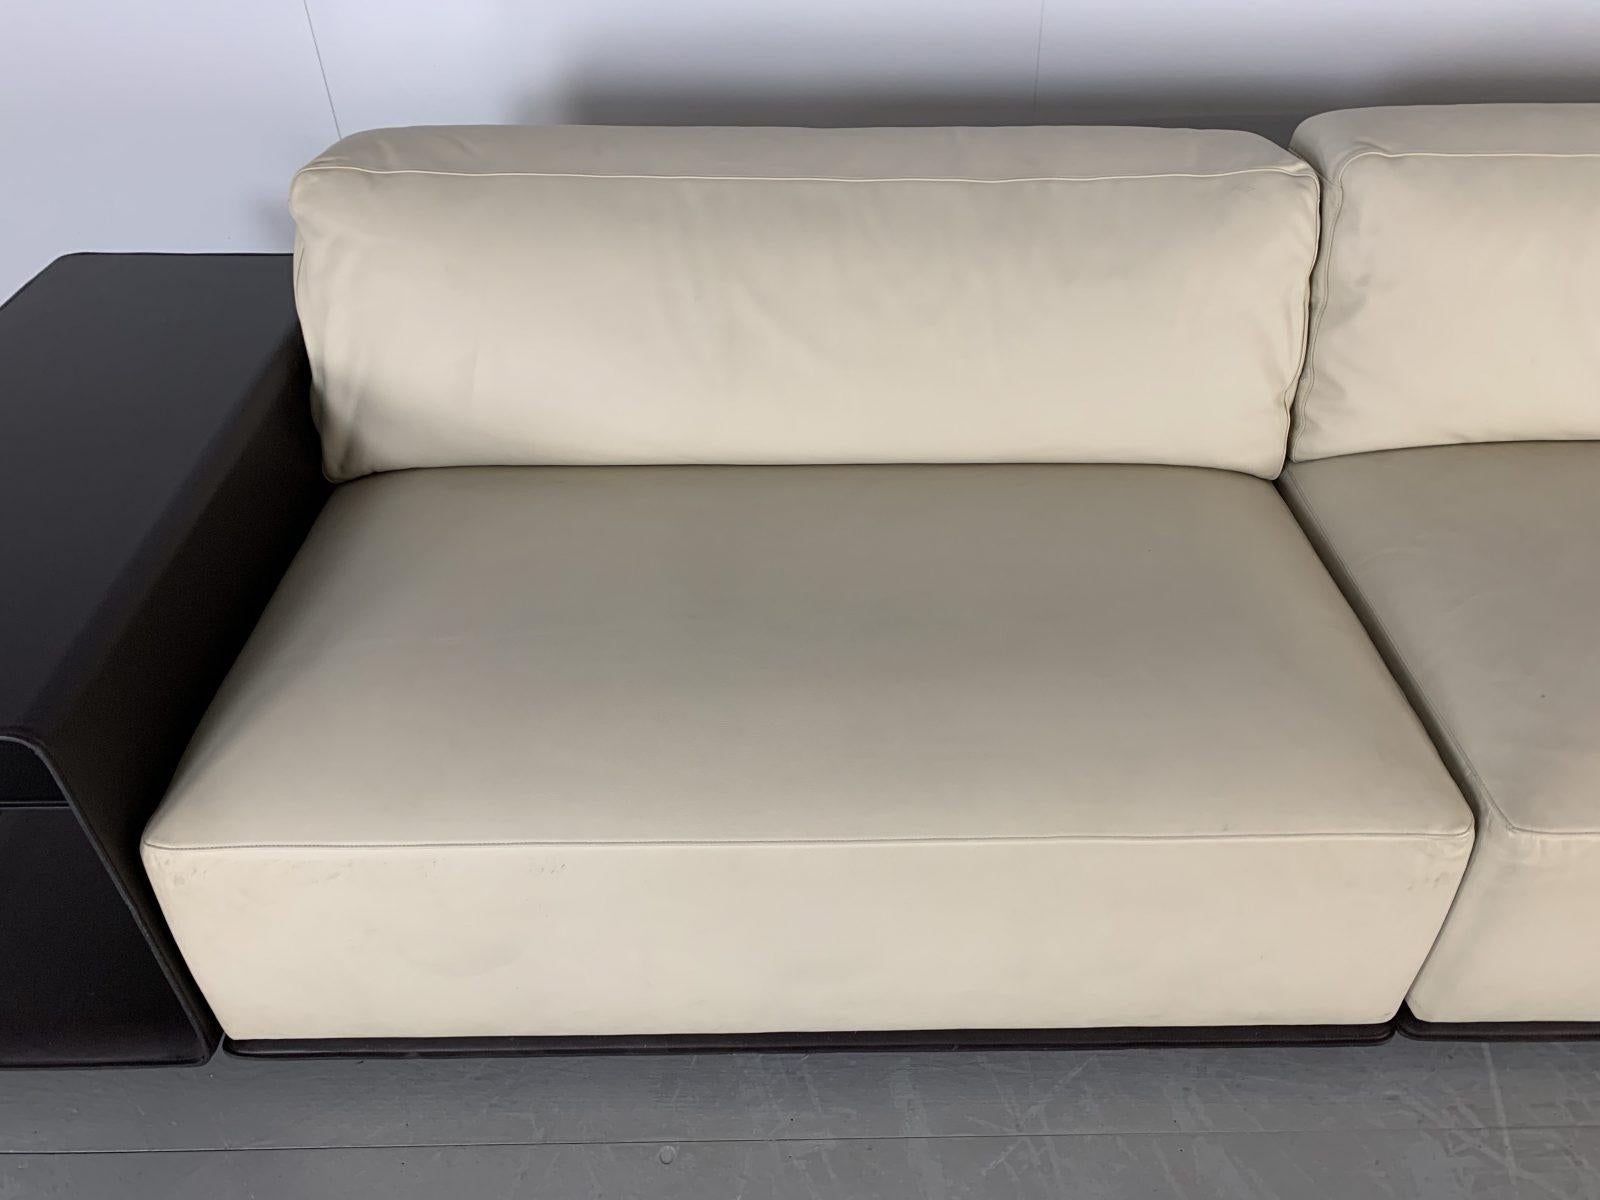 Sublime Poltrona Frau “Cassiopea” Large Sofa with Bookcase-End in Saddle Leather 3